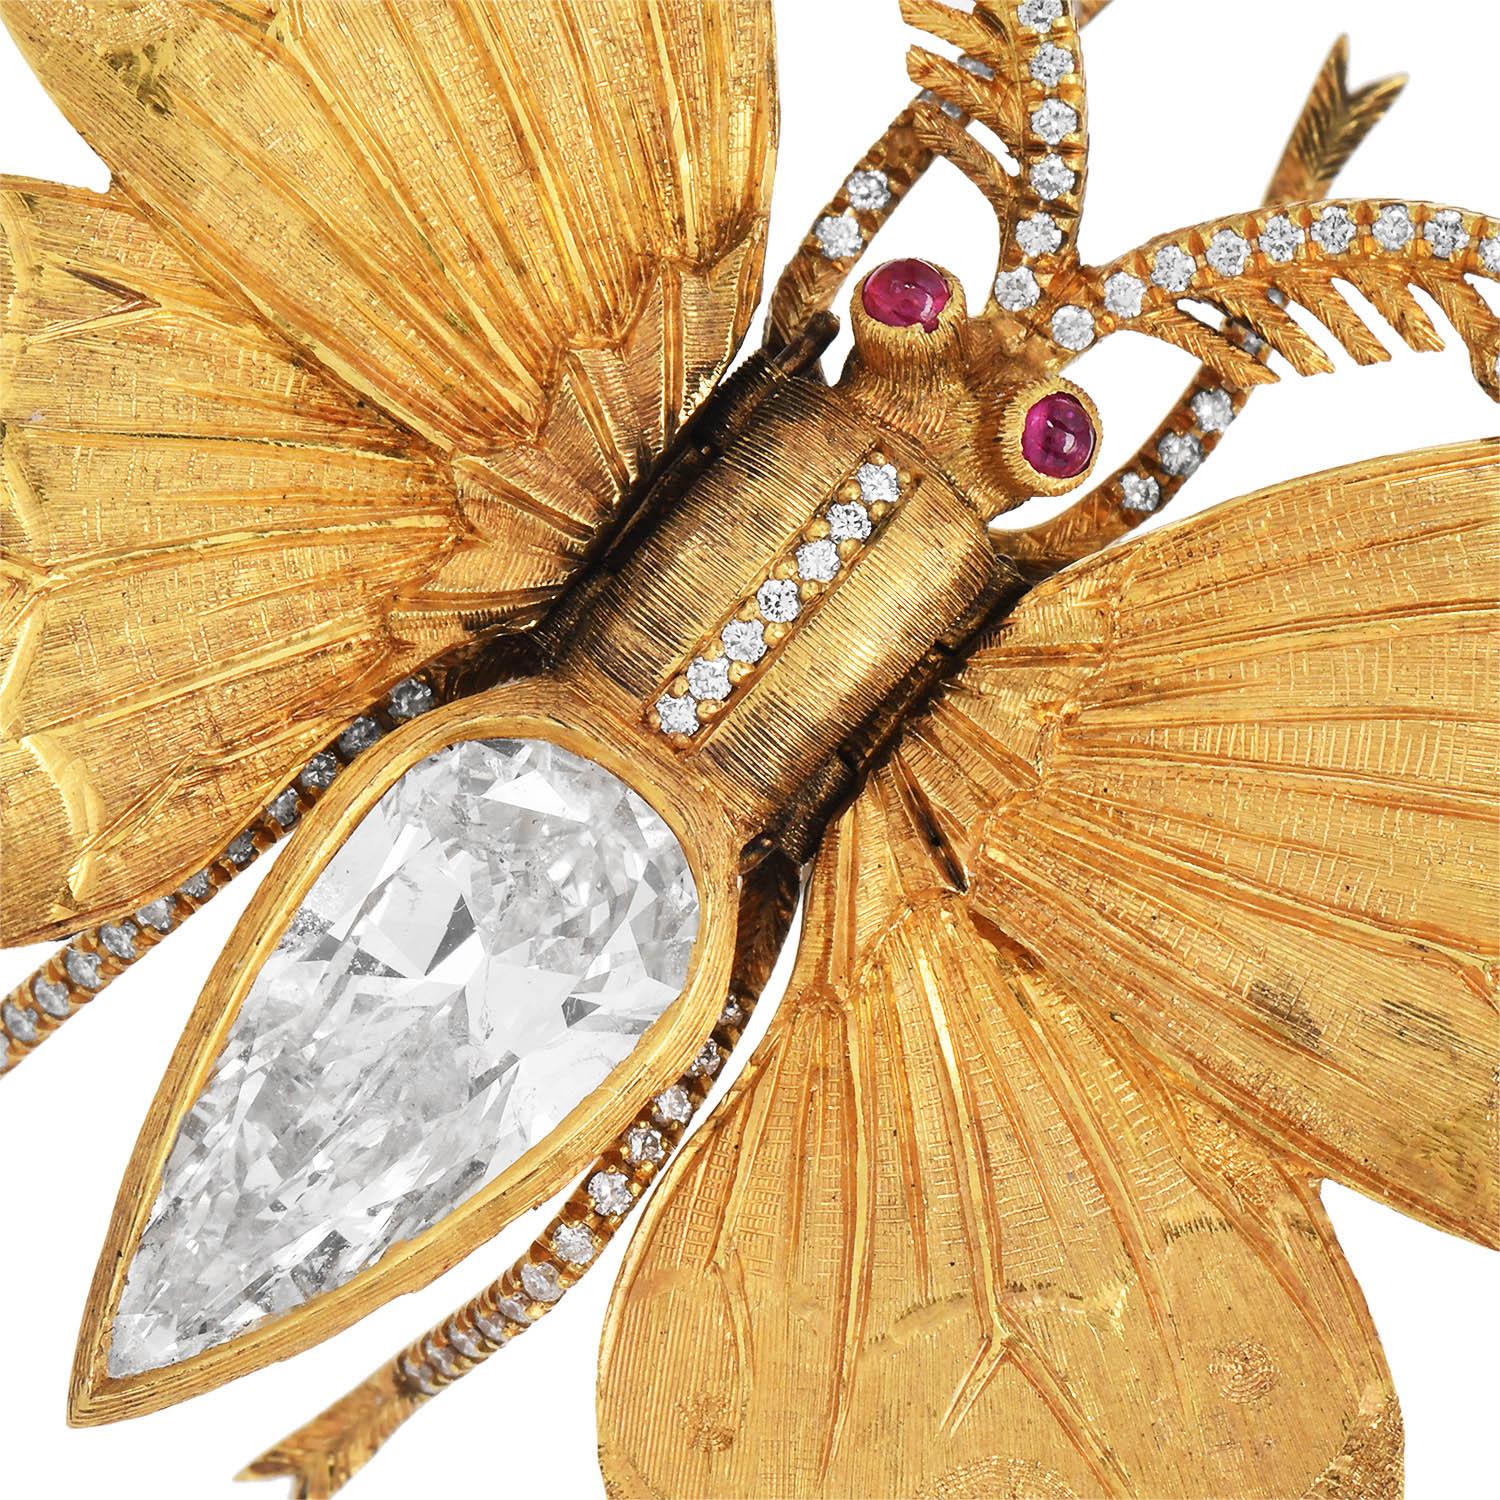 Mario Buccellati Diamant Rubin Schmetterling Brosche Pin

Wir präsentieren eine Schmetterlingsbrosche von Buccellati mit einem natürlichen, länglichen Diamant in Birnenform und Rubinaugen, entworfen von Mario Buccellati. 

Natürlicher runder Diamant